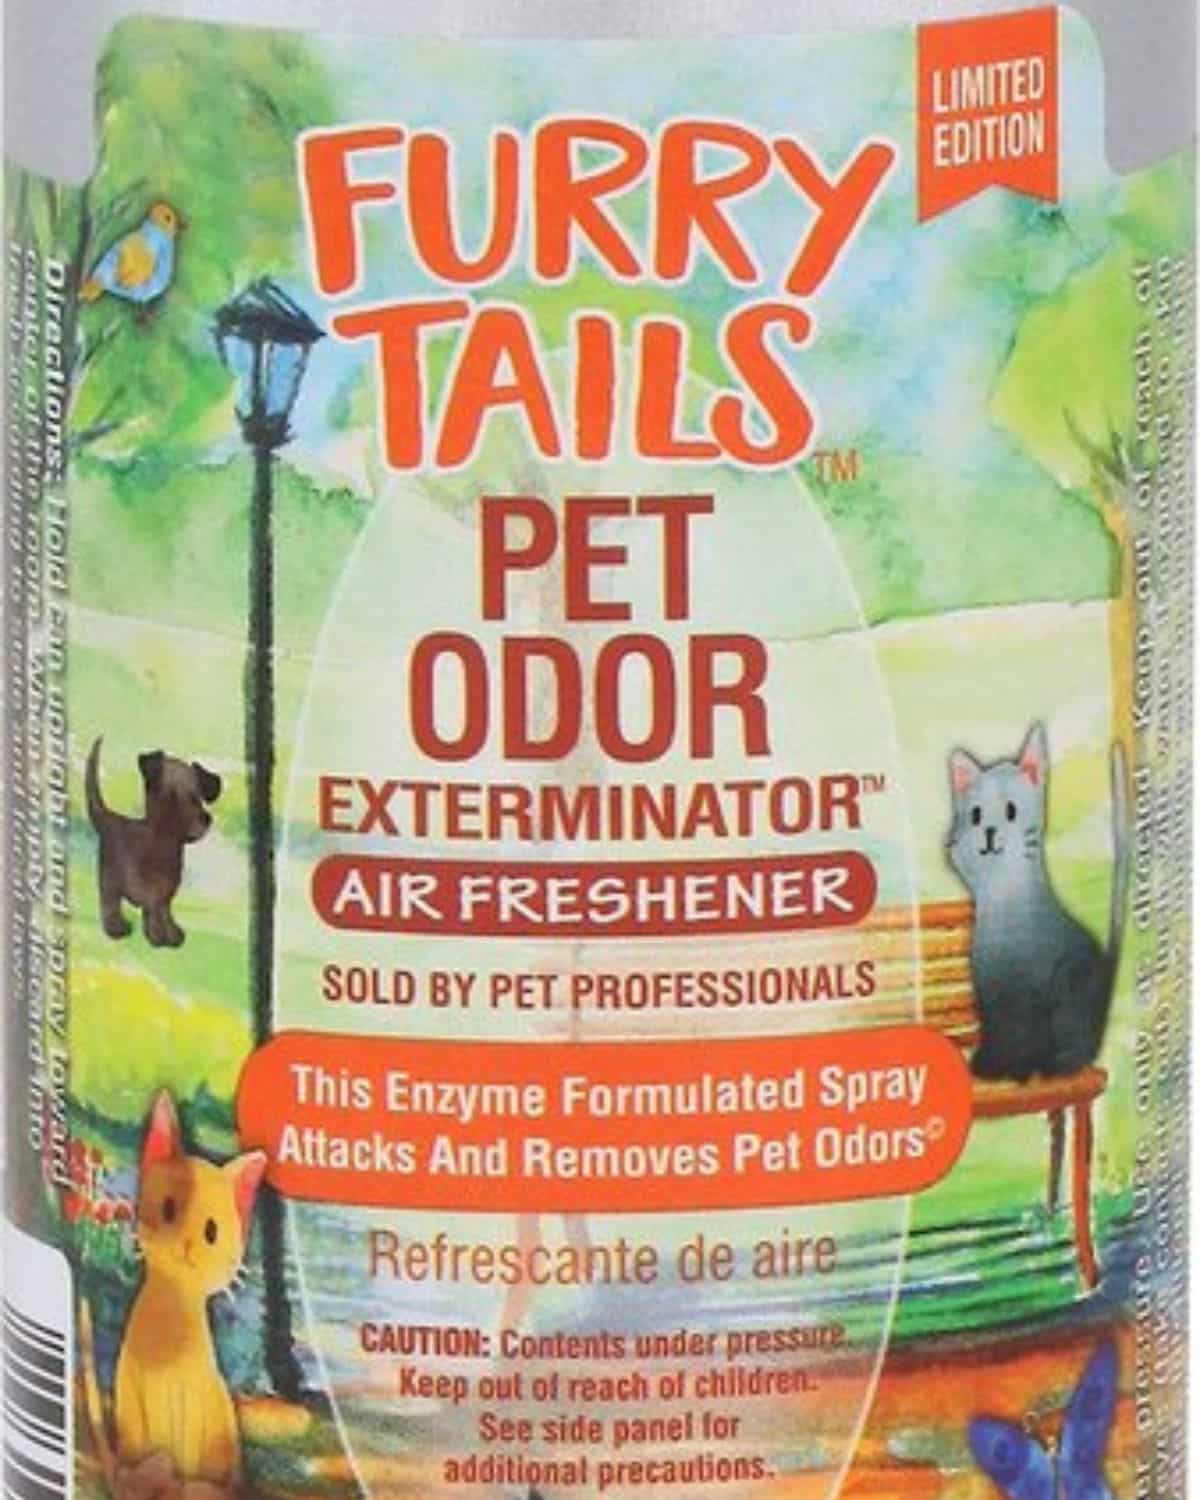 Pet Odor Exterminator Furry Tails Air Freshener